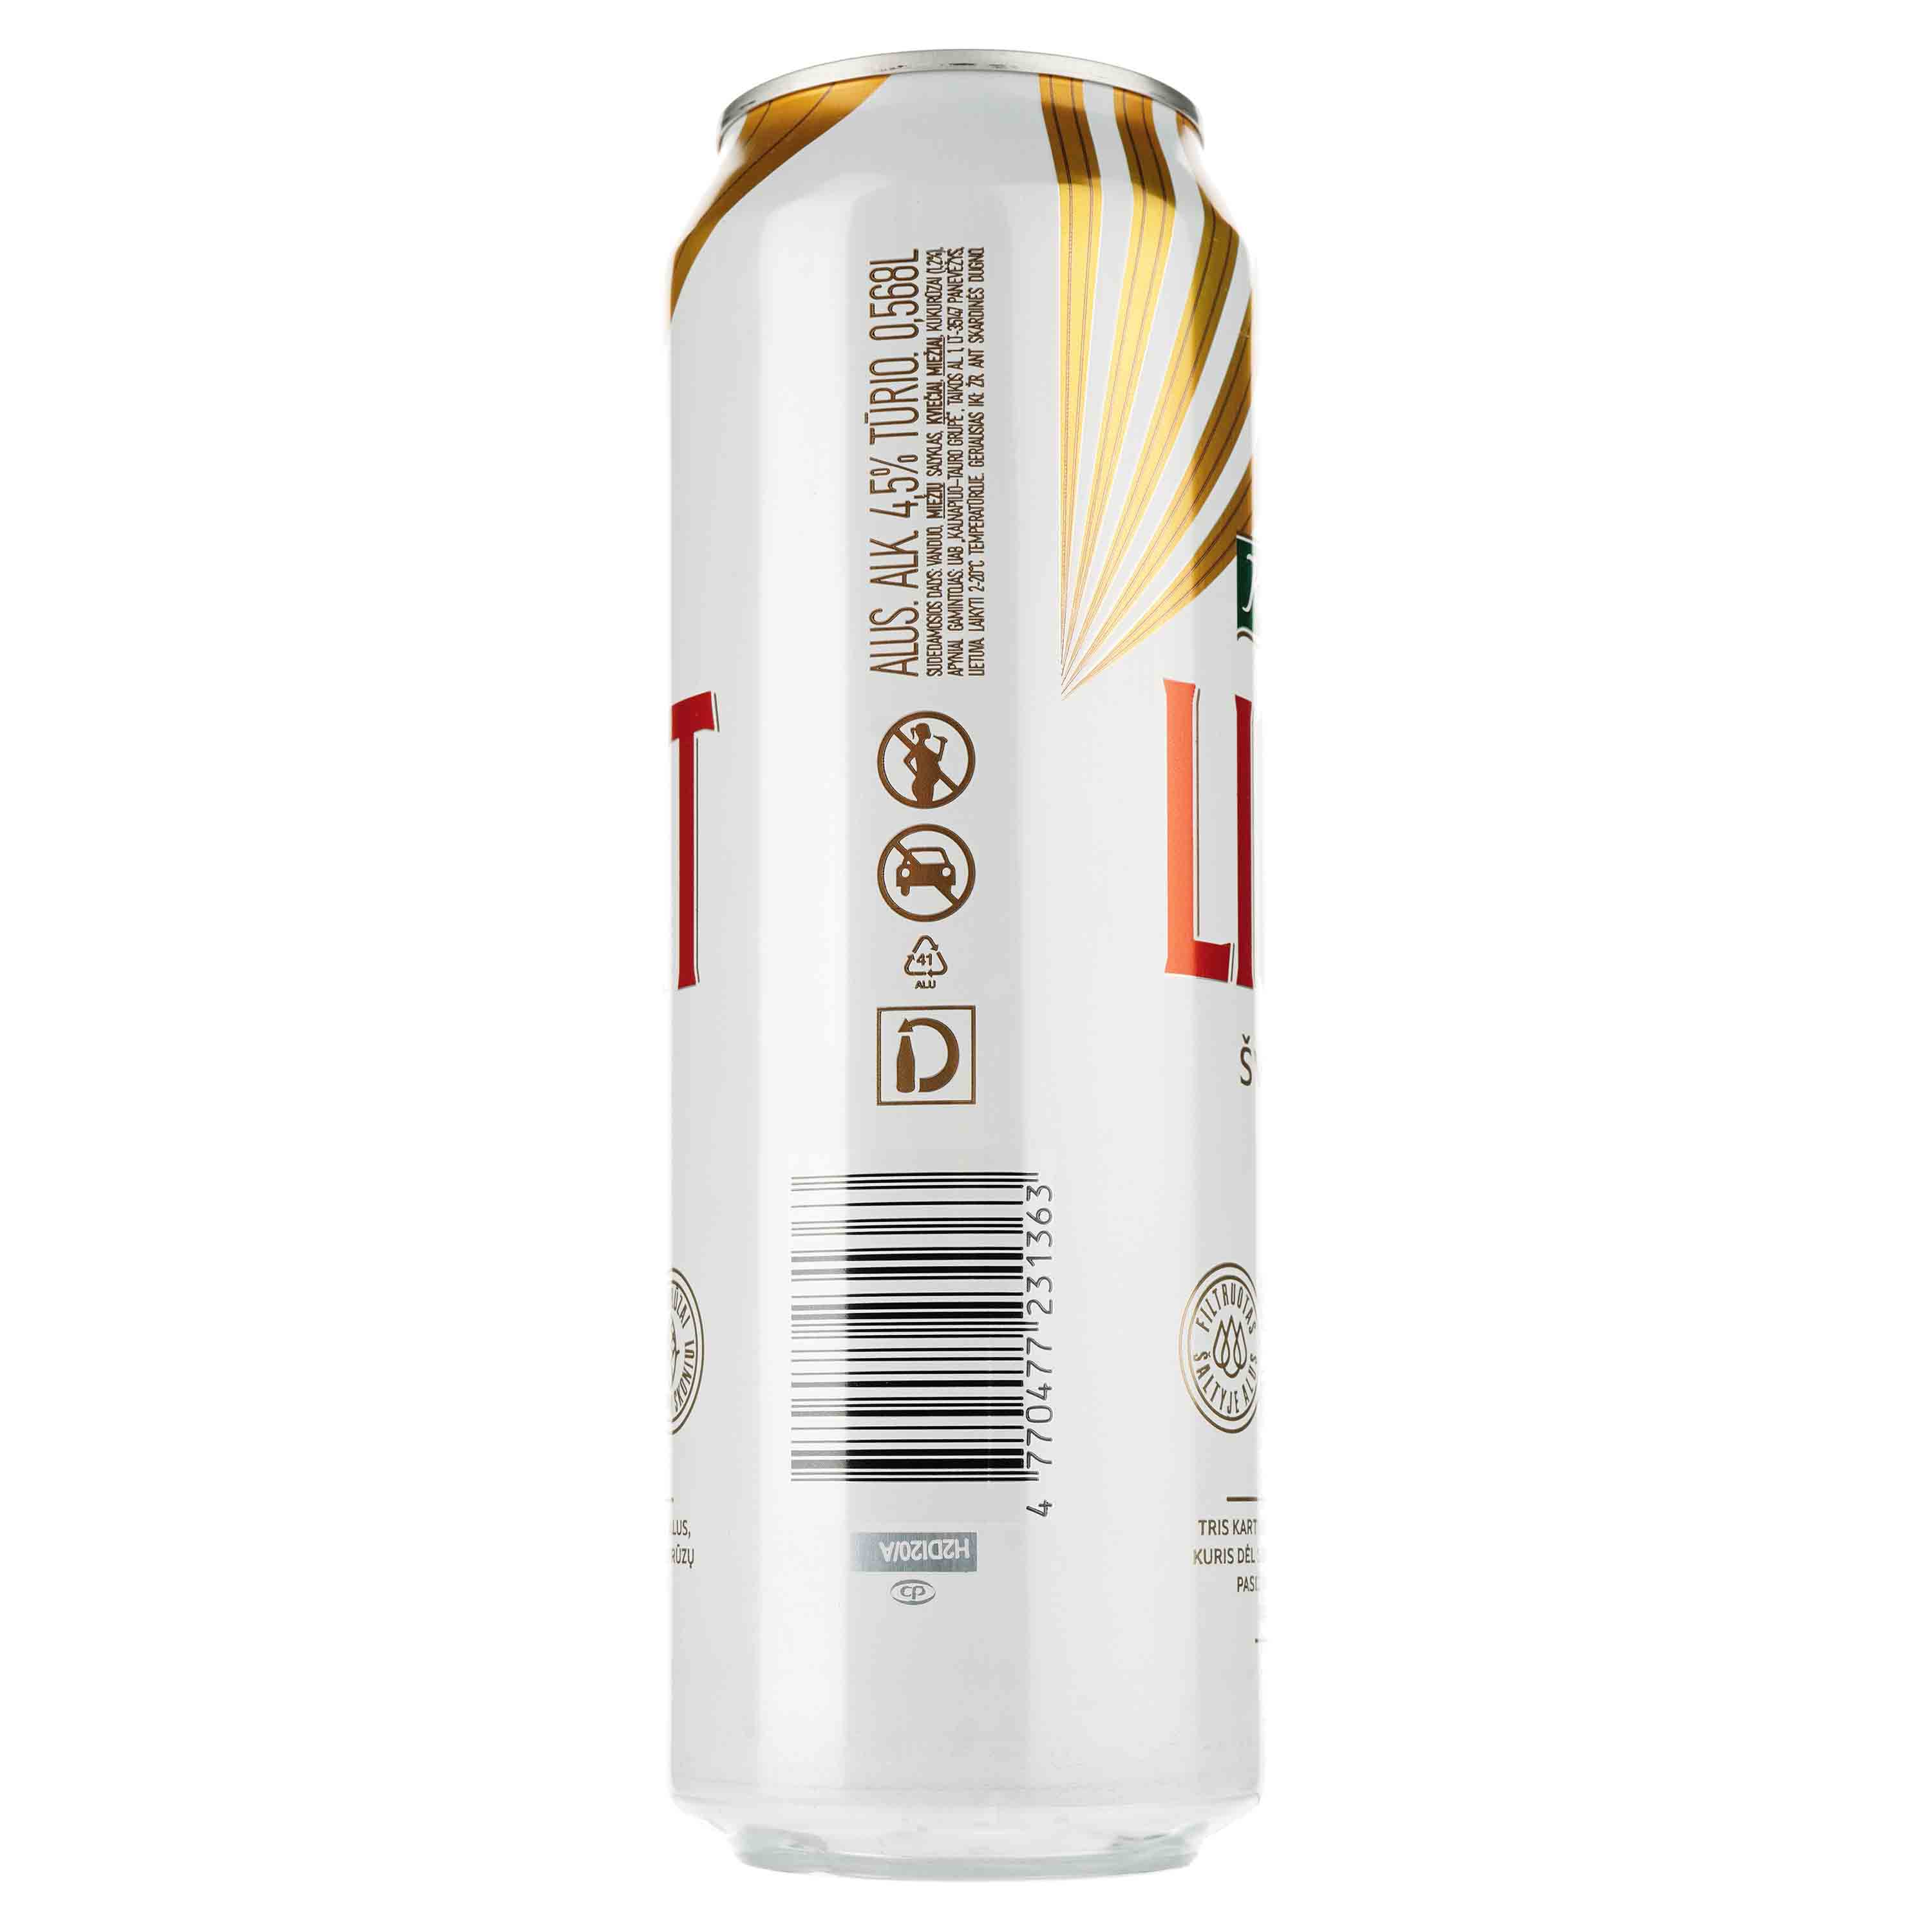 Пиво Kalnapilis Light, світле, фільтроване, 4,7%, з/б, 0,568 л - фото 2